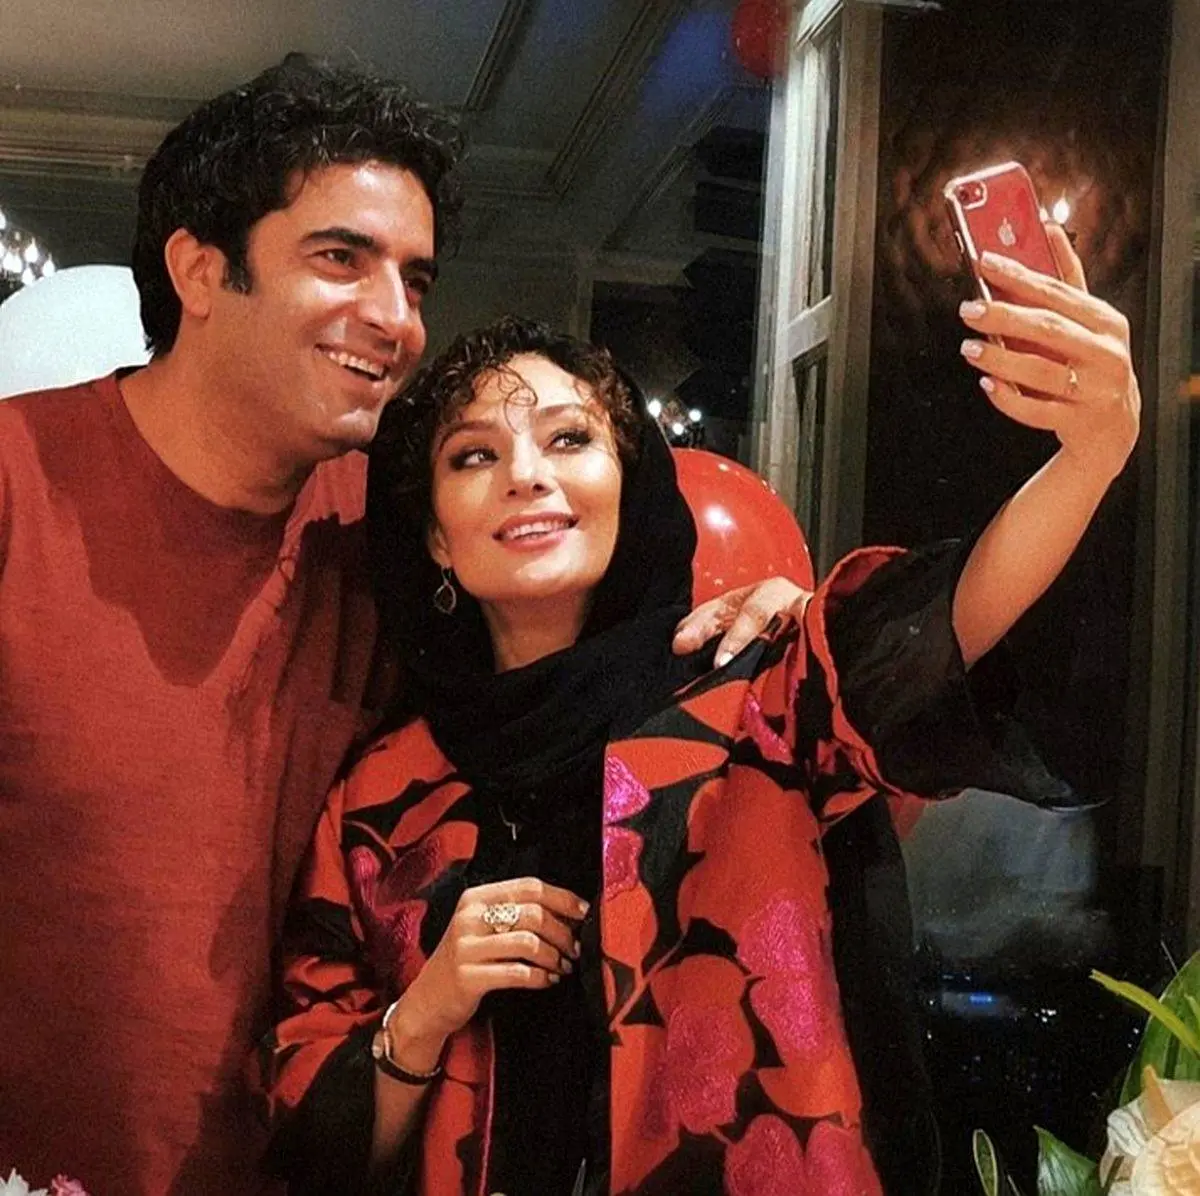 یکتا ناصر بعد از مدت عکسی با همسرش منتشر کرد | عکس نوروزی یکتا ناصر و منوچهر هادی 